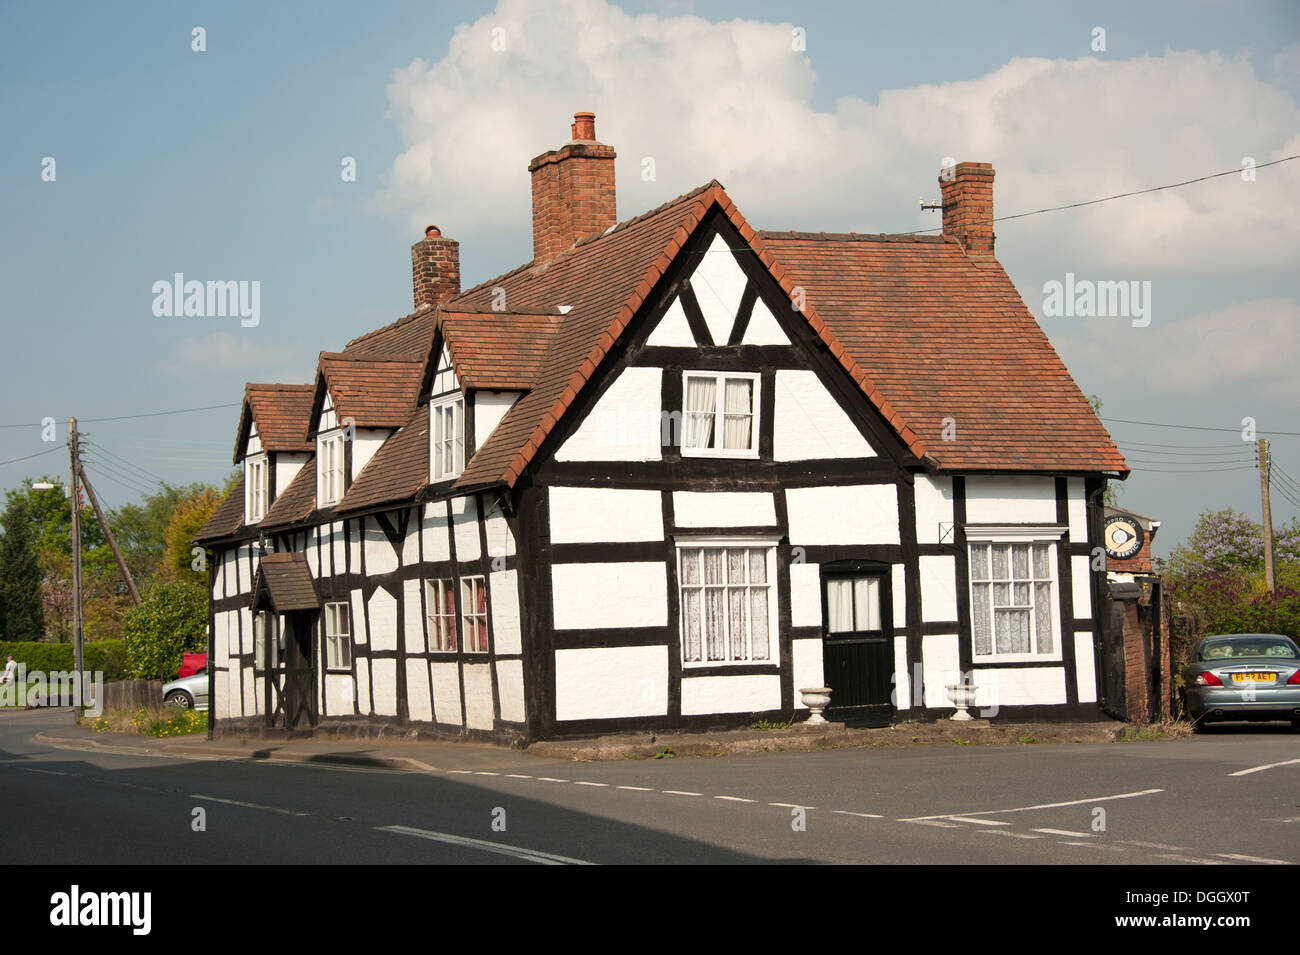 Vieille maison noir et blanc Hodnett Shropshire UK Banque D'Images